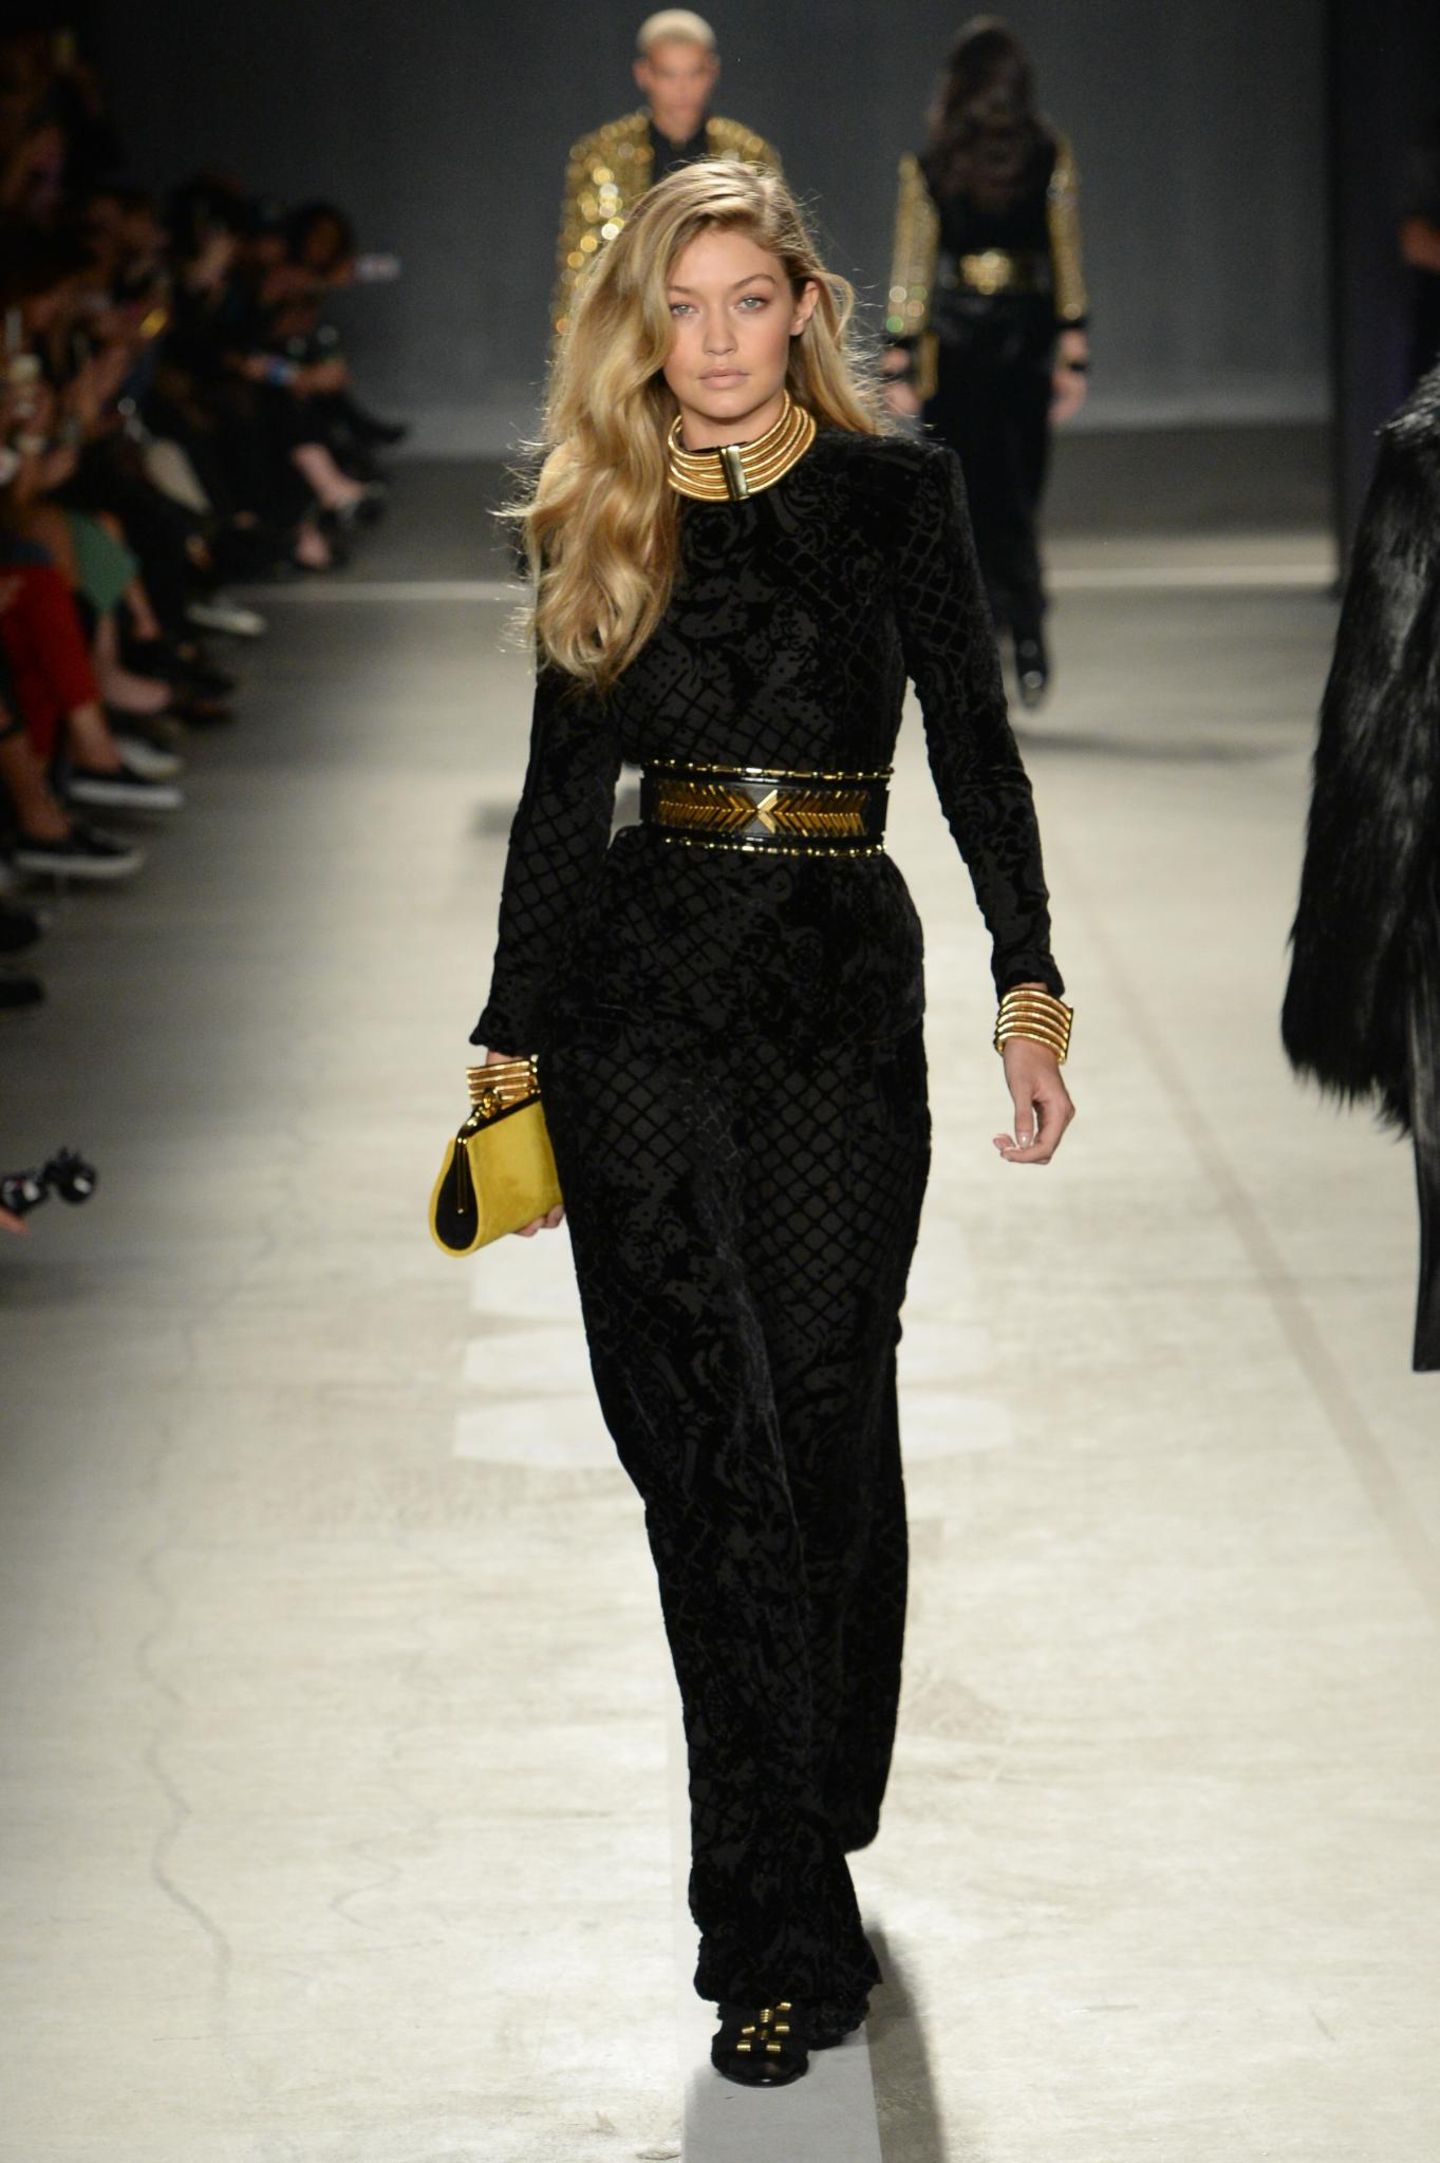 Auch hier wieder die Lieblingskombi von Balmain: Schwarz und Gold an Model Gigi Hadid.